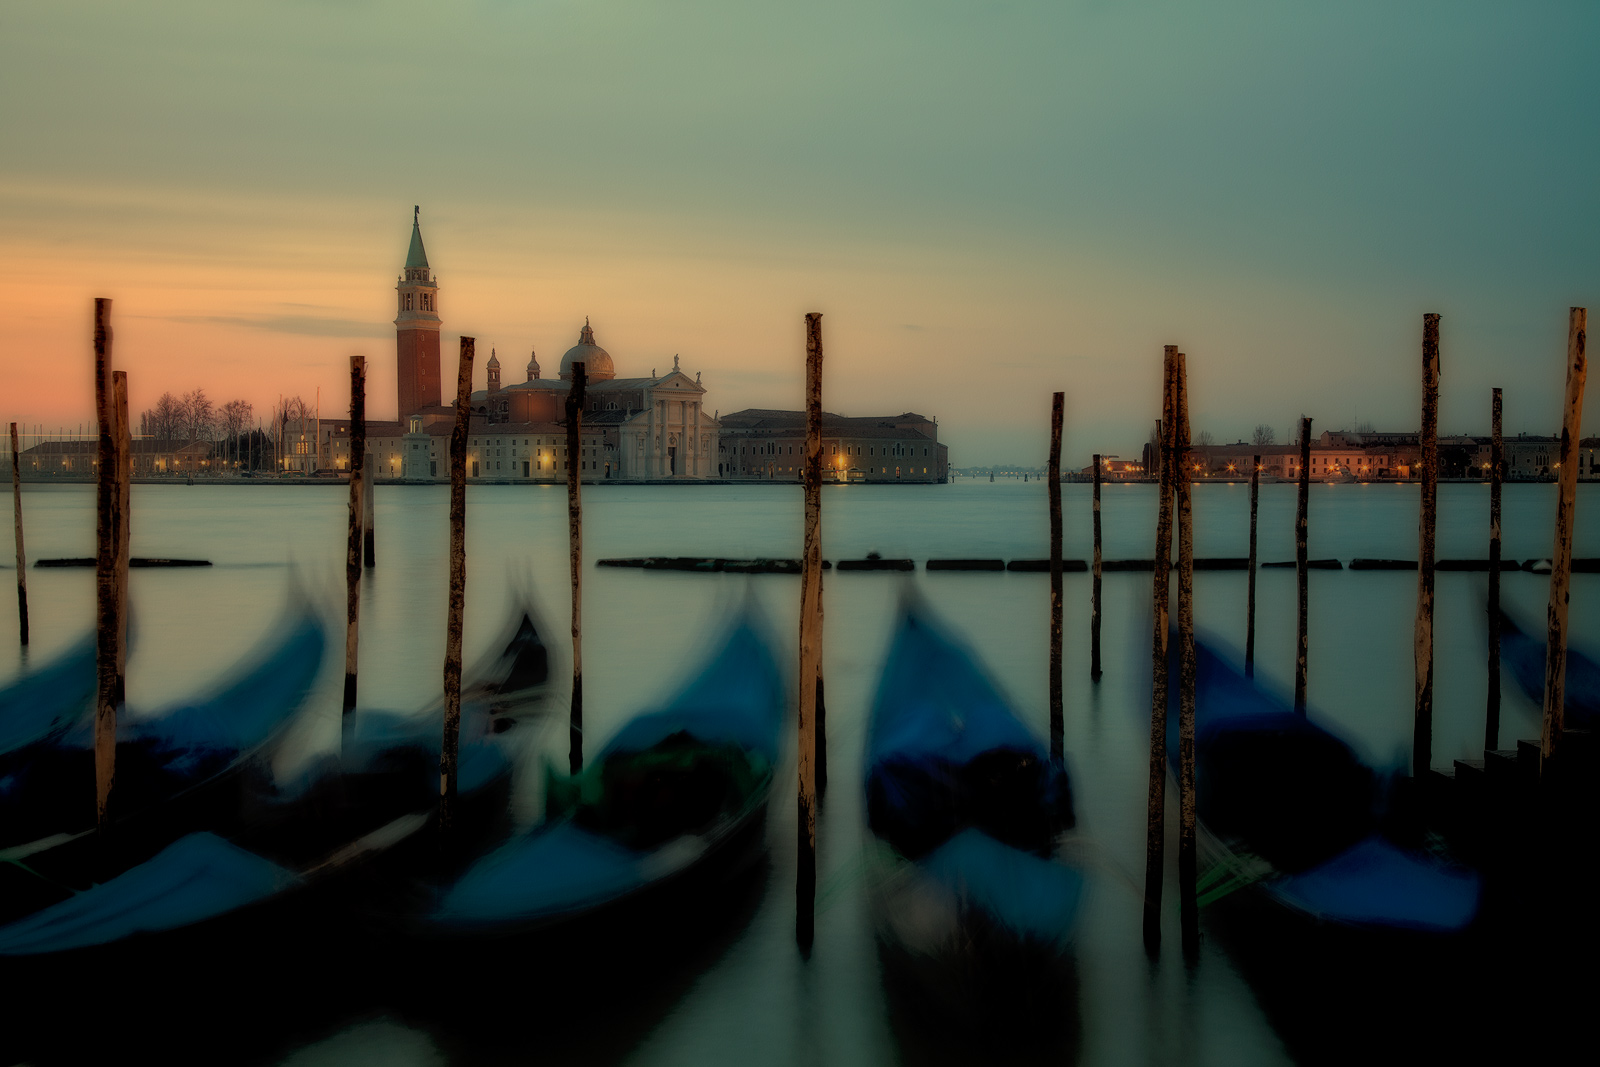 Gondolas docked at San Marco Square in Venice